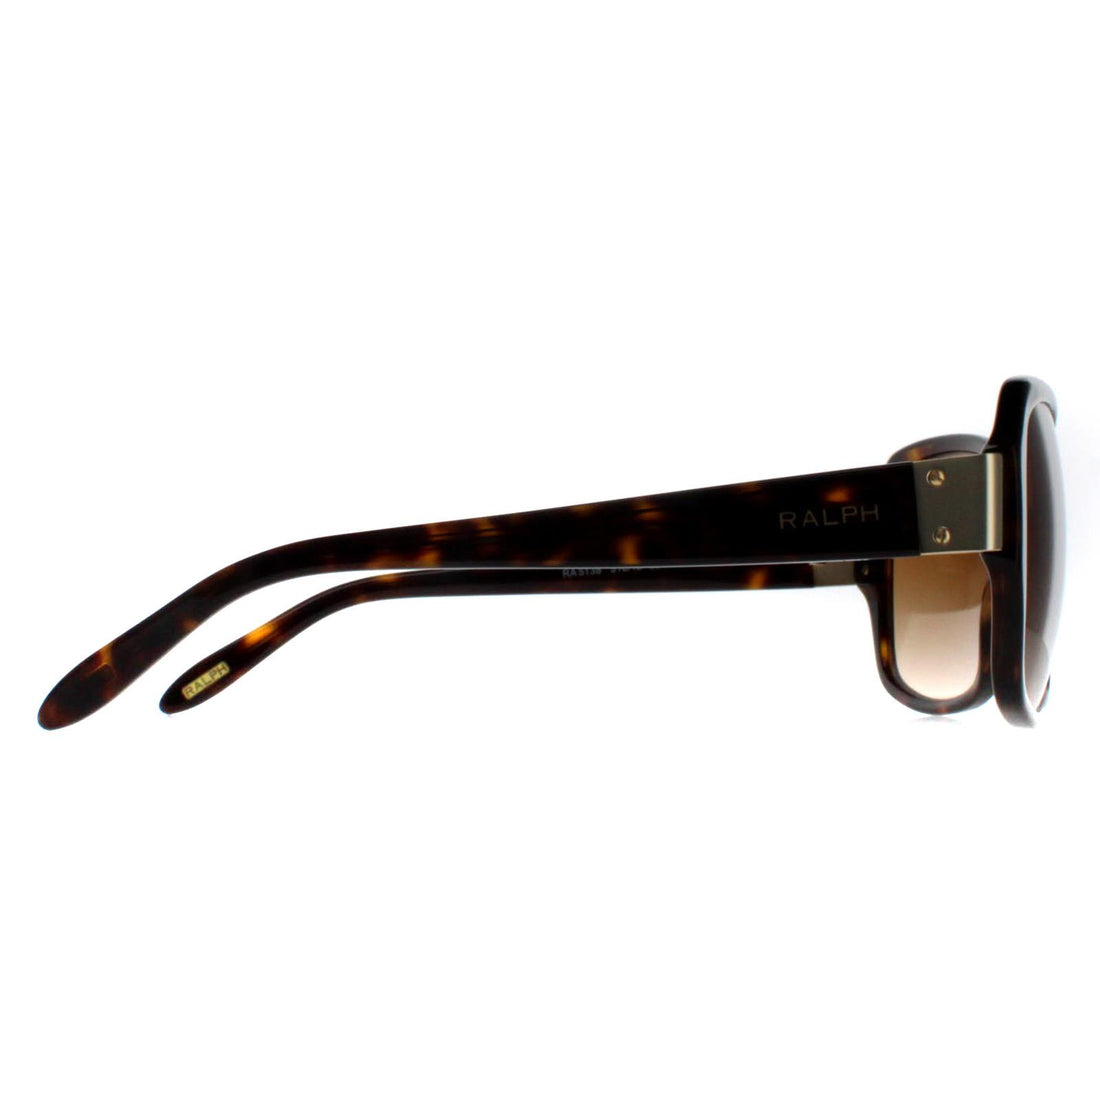 Ralph by Ralph Lauren Sunglasses RA5138 510/13 Dark Havana Brown Gradient